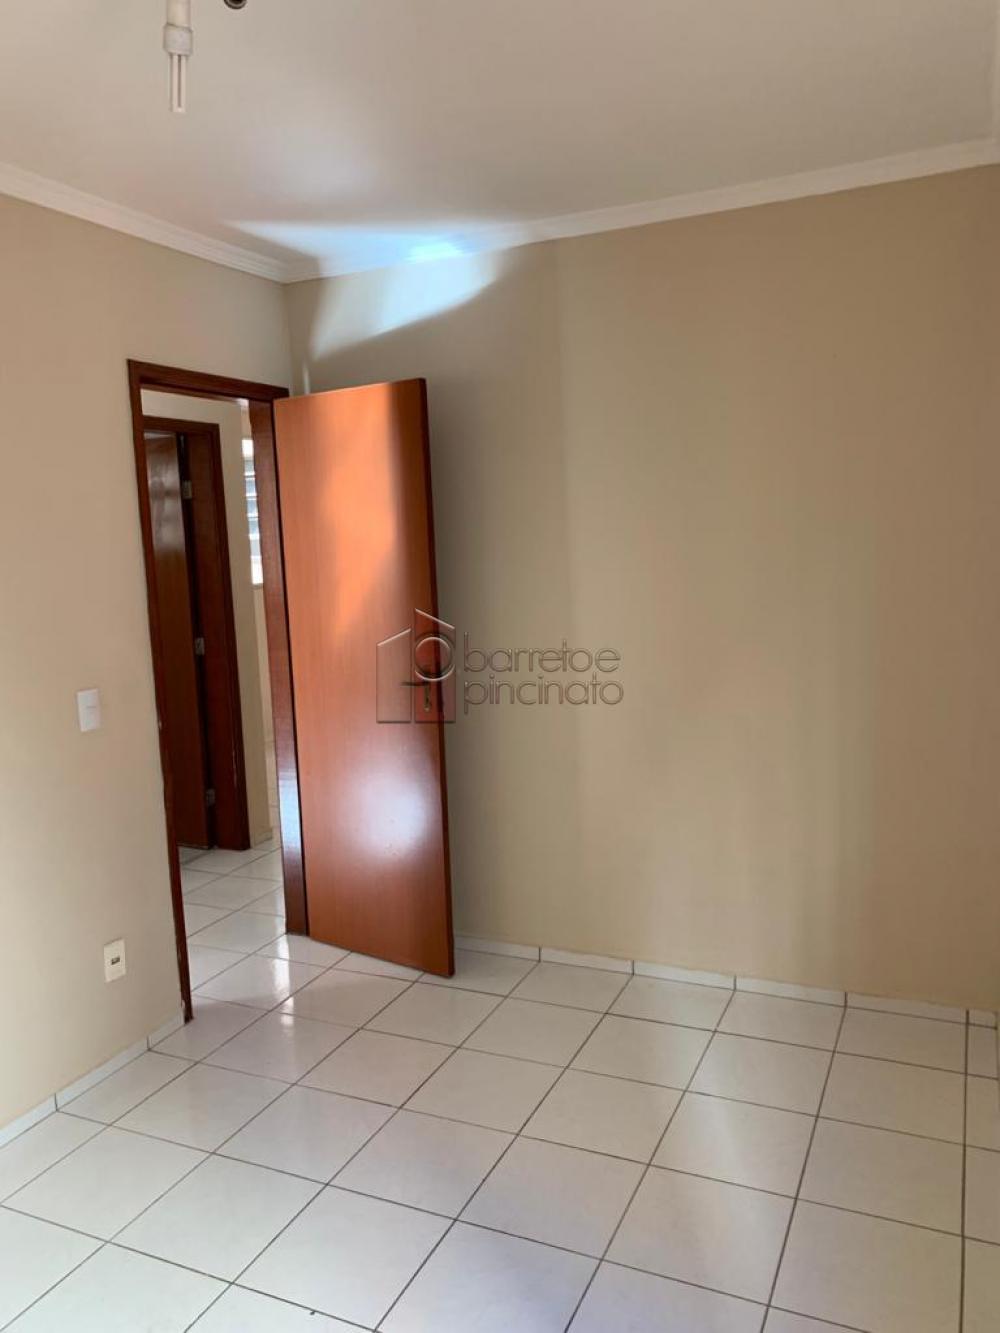 Alugar Apartamento / Padrão em Jundiaí R$ 950,00 - Foto 6